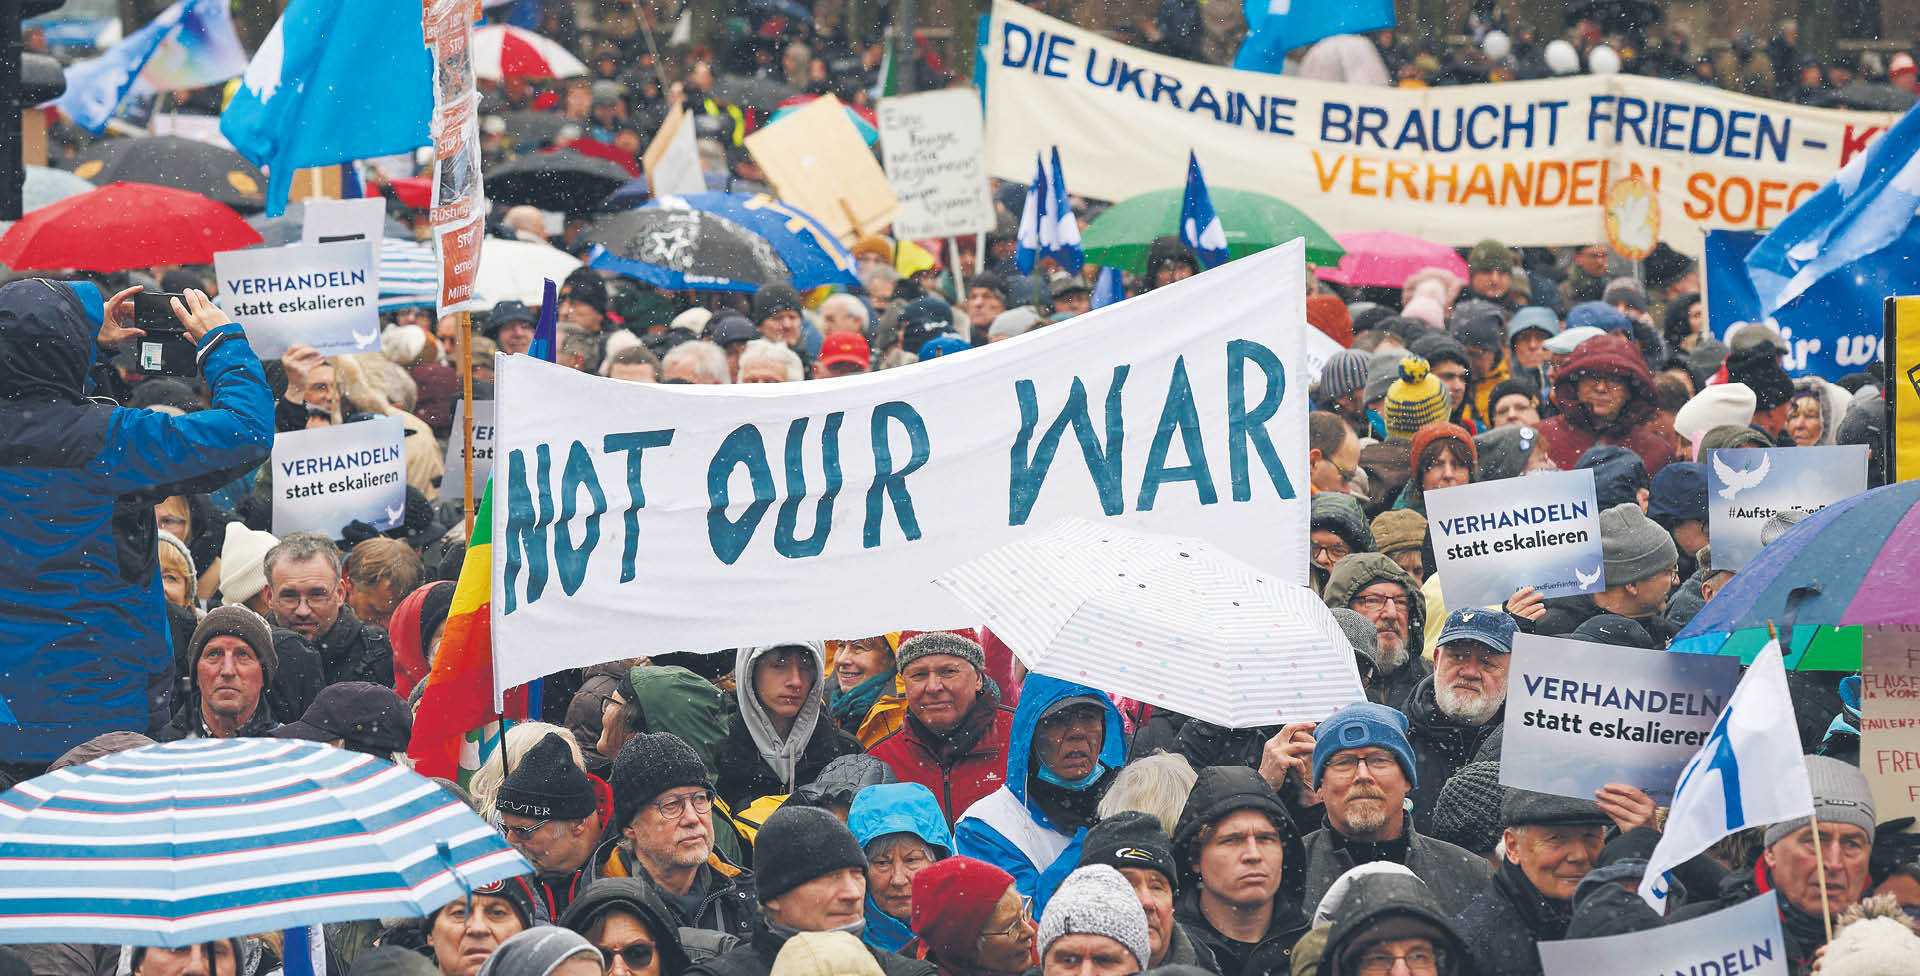 Sobotnia manifestacja przeciwników wsparcia Ukrainy w Berlinie